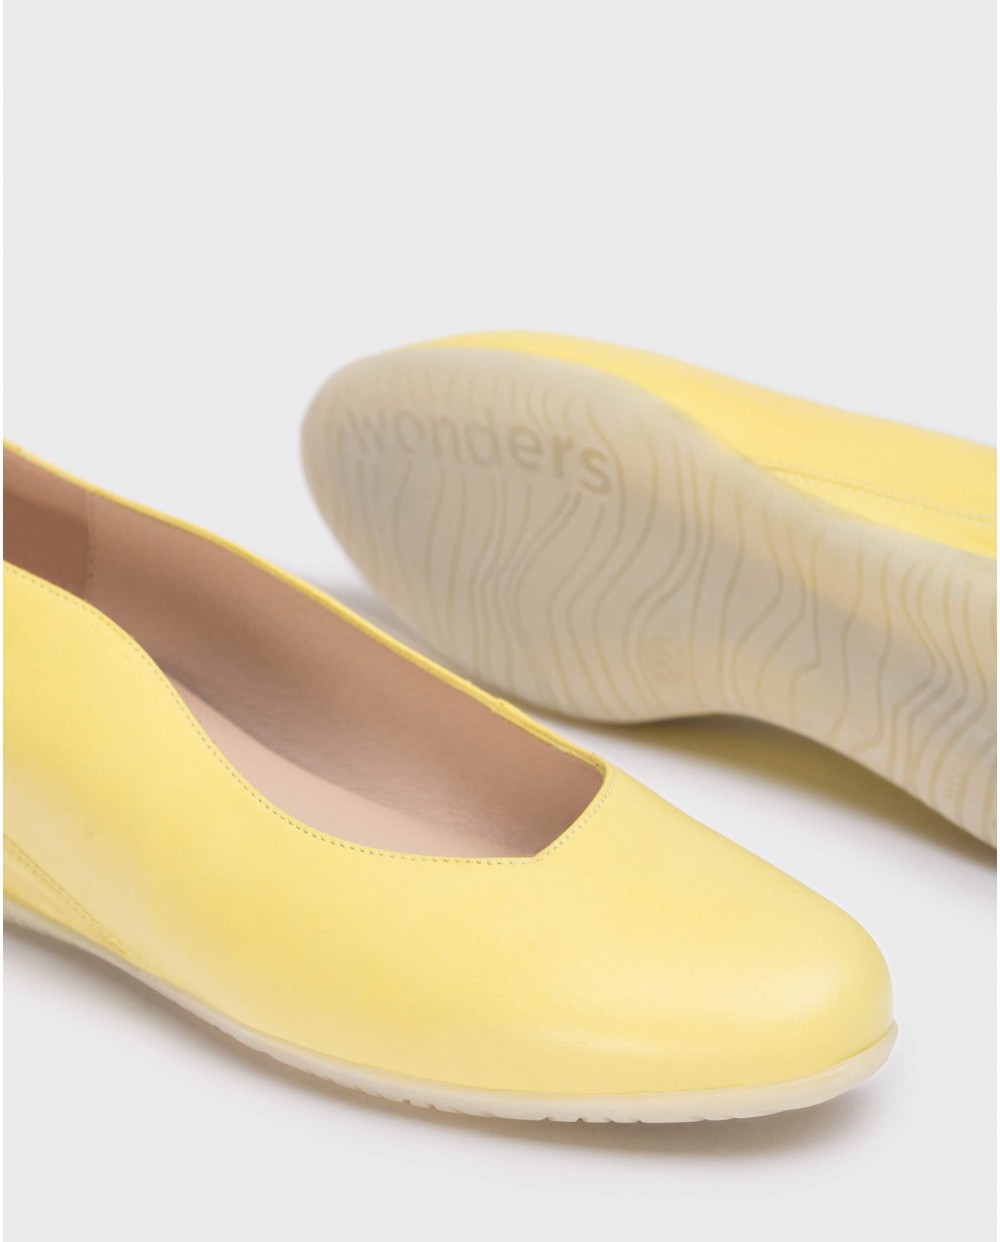 Wonders-Zapatos planos-Bailarina piel amarilla